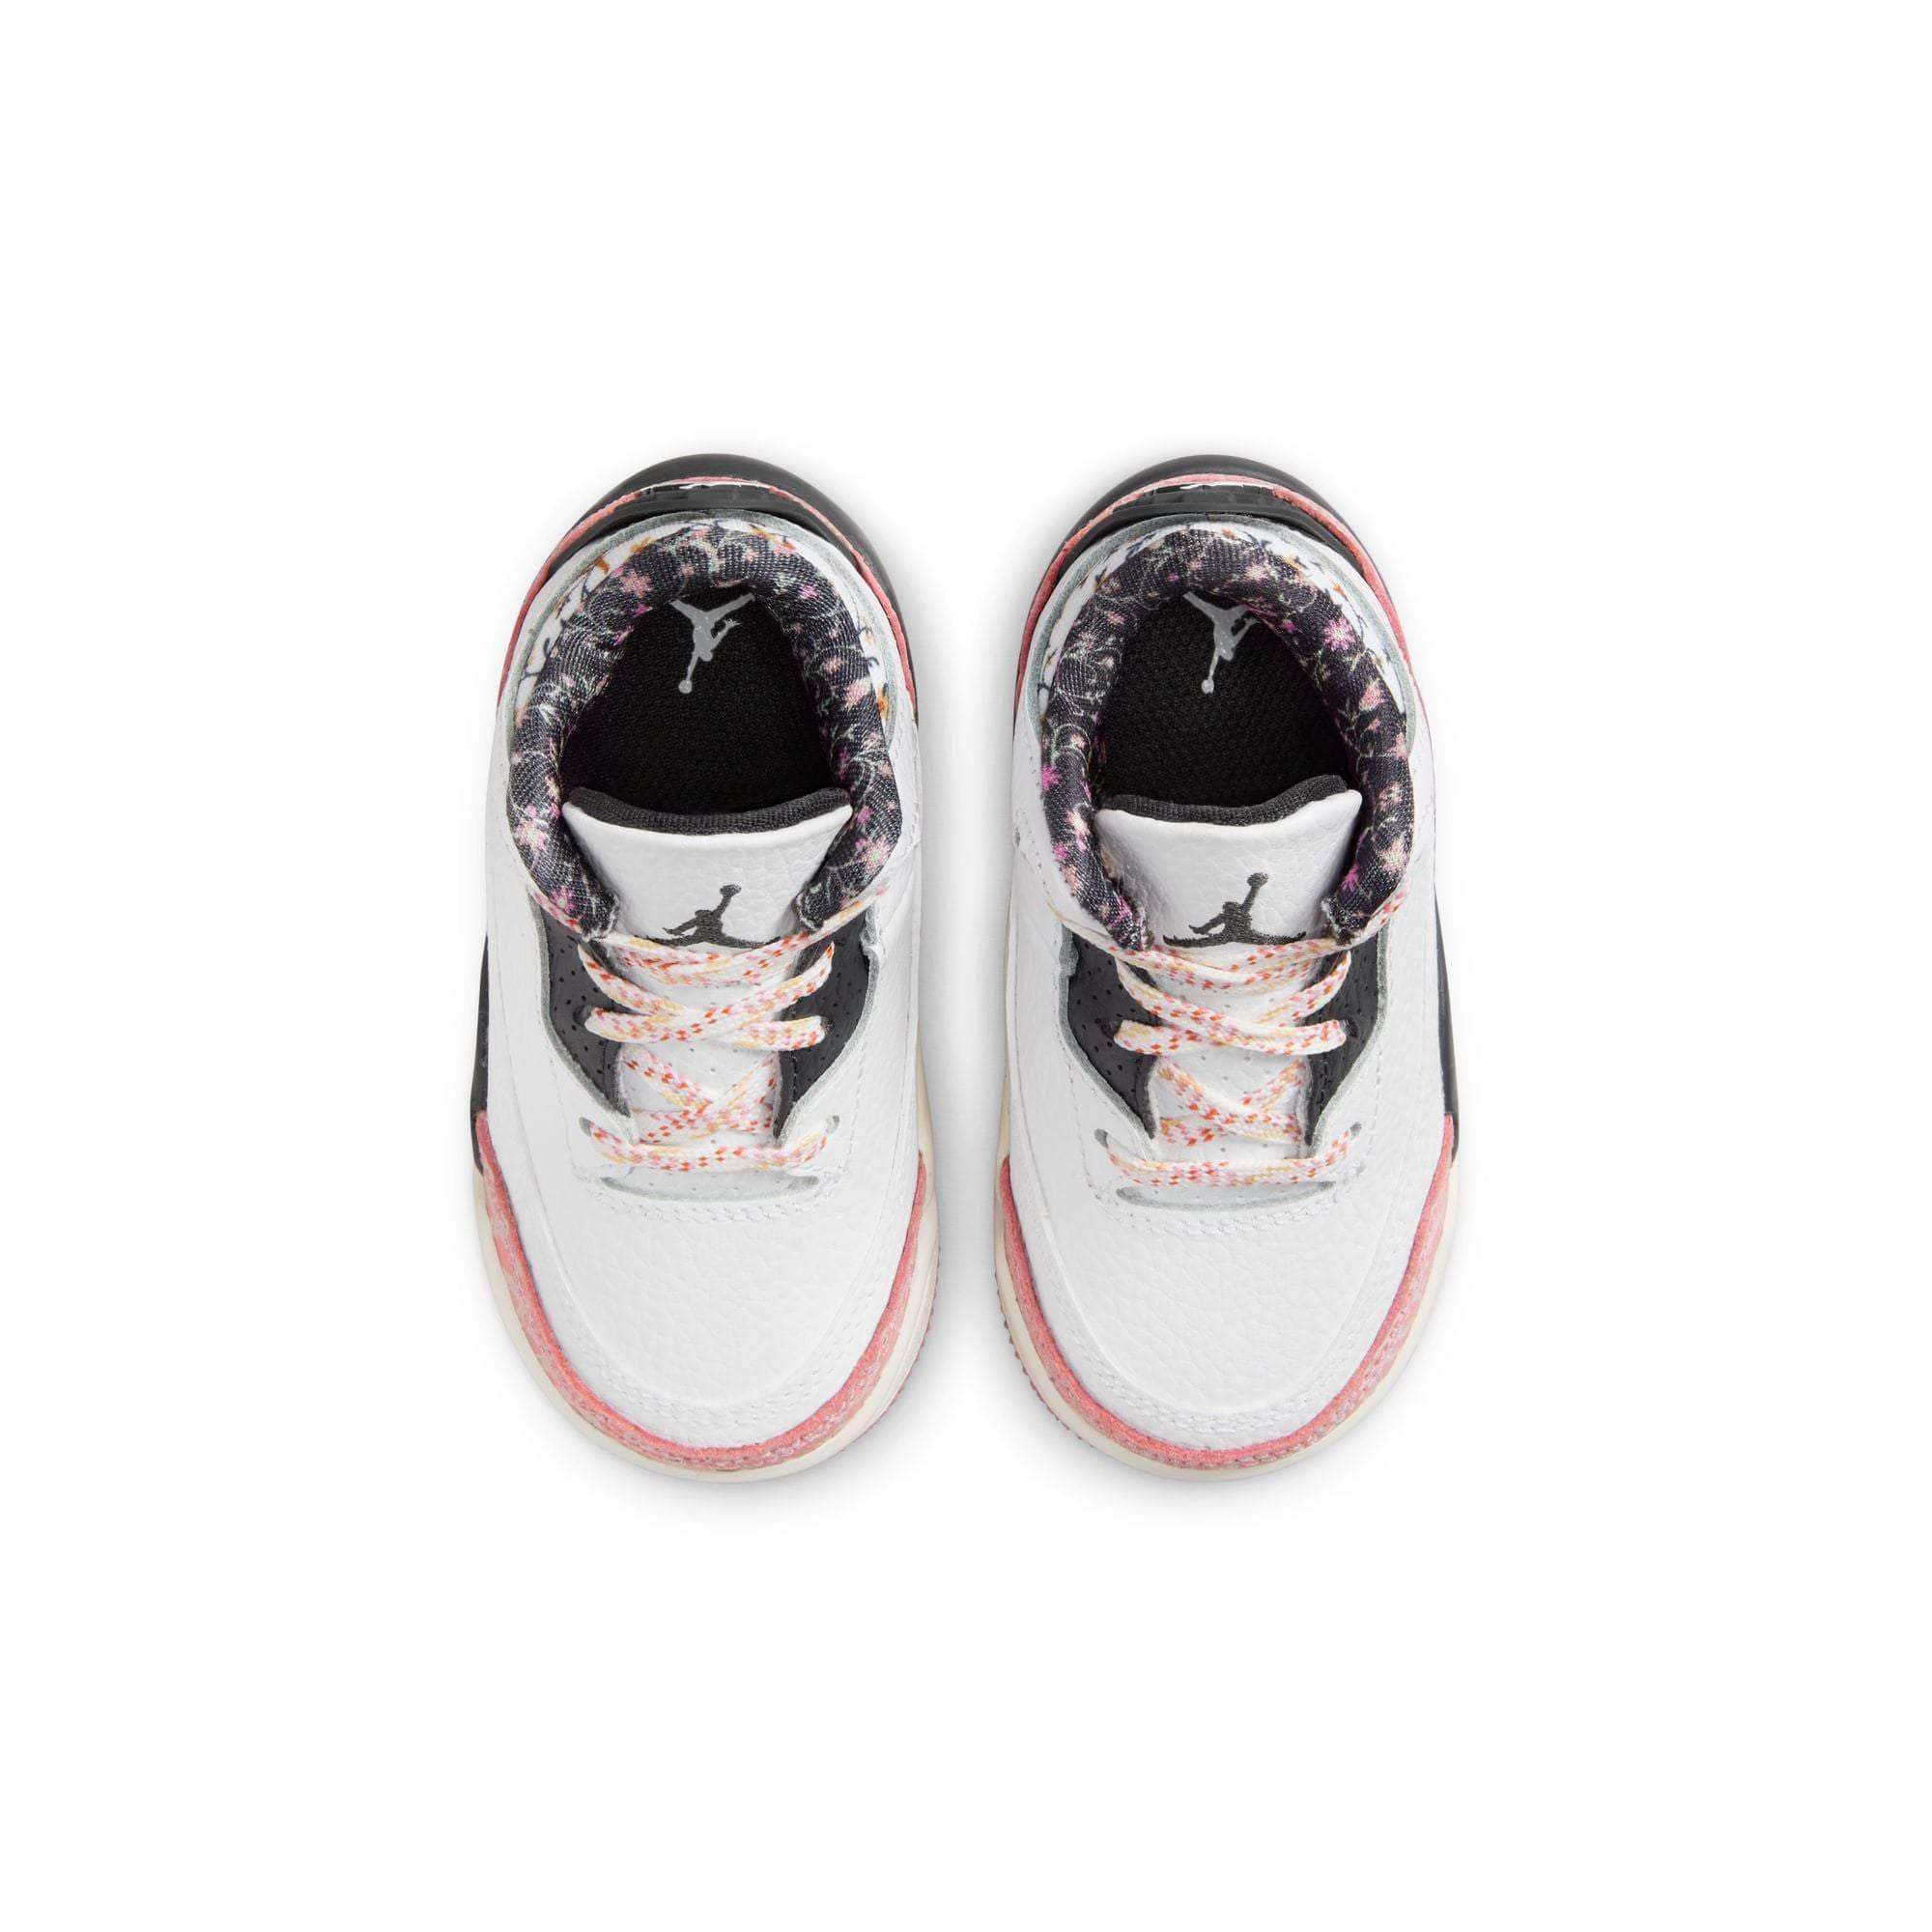 Air Jordan Footwear Air Jordan 3 Retro "Red Stardust" - Toddler's TD